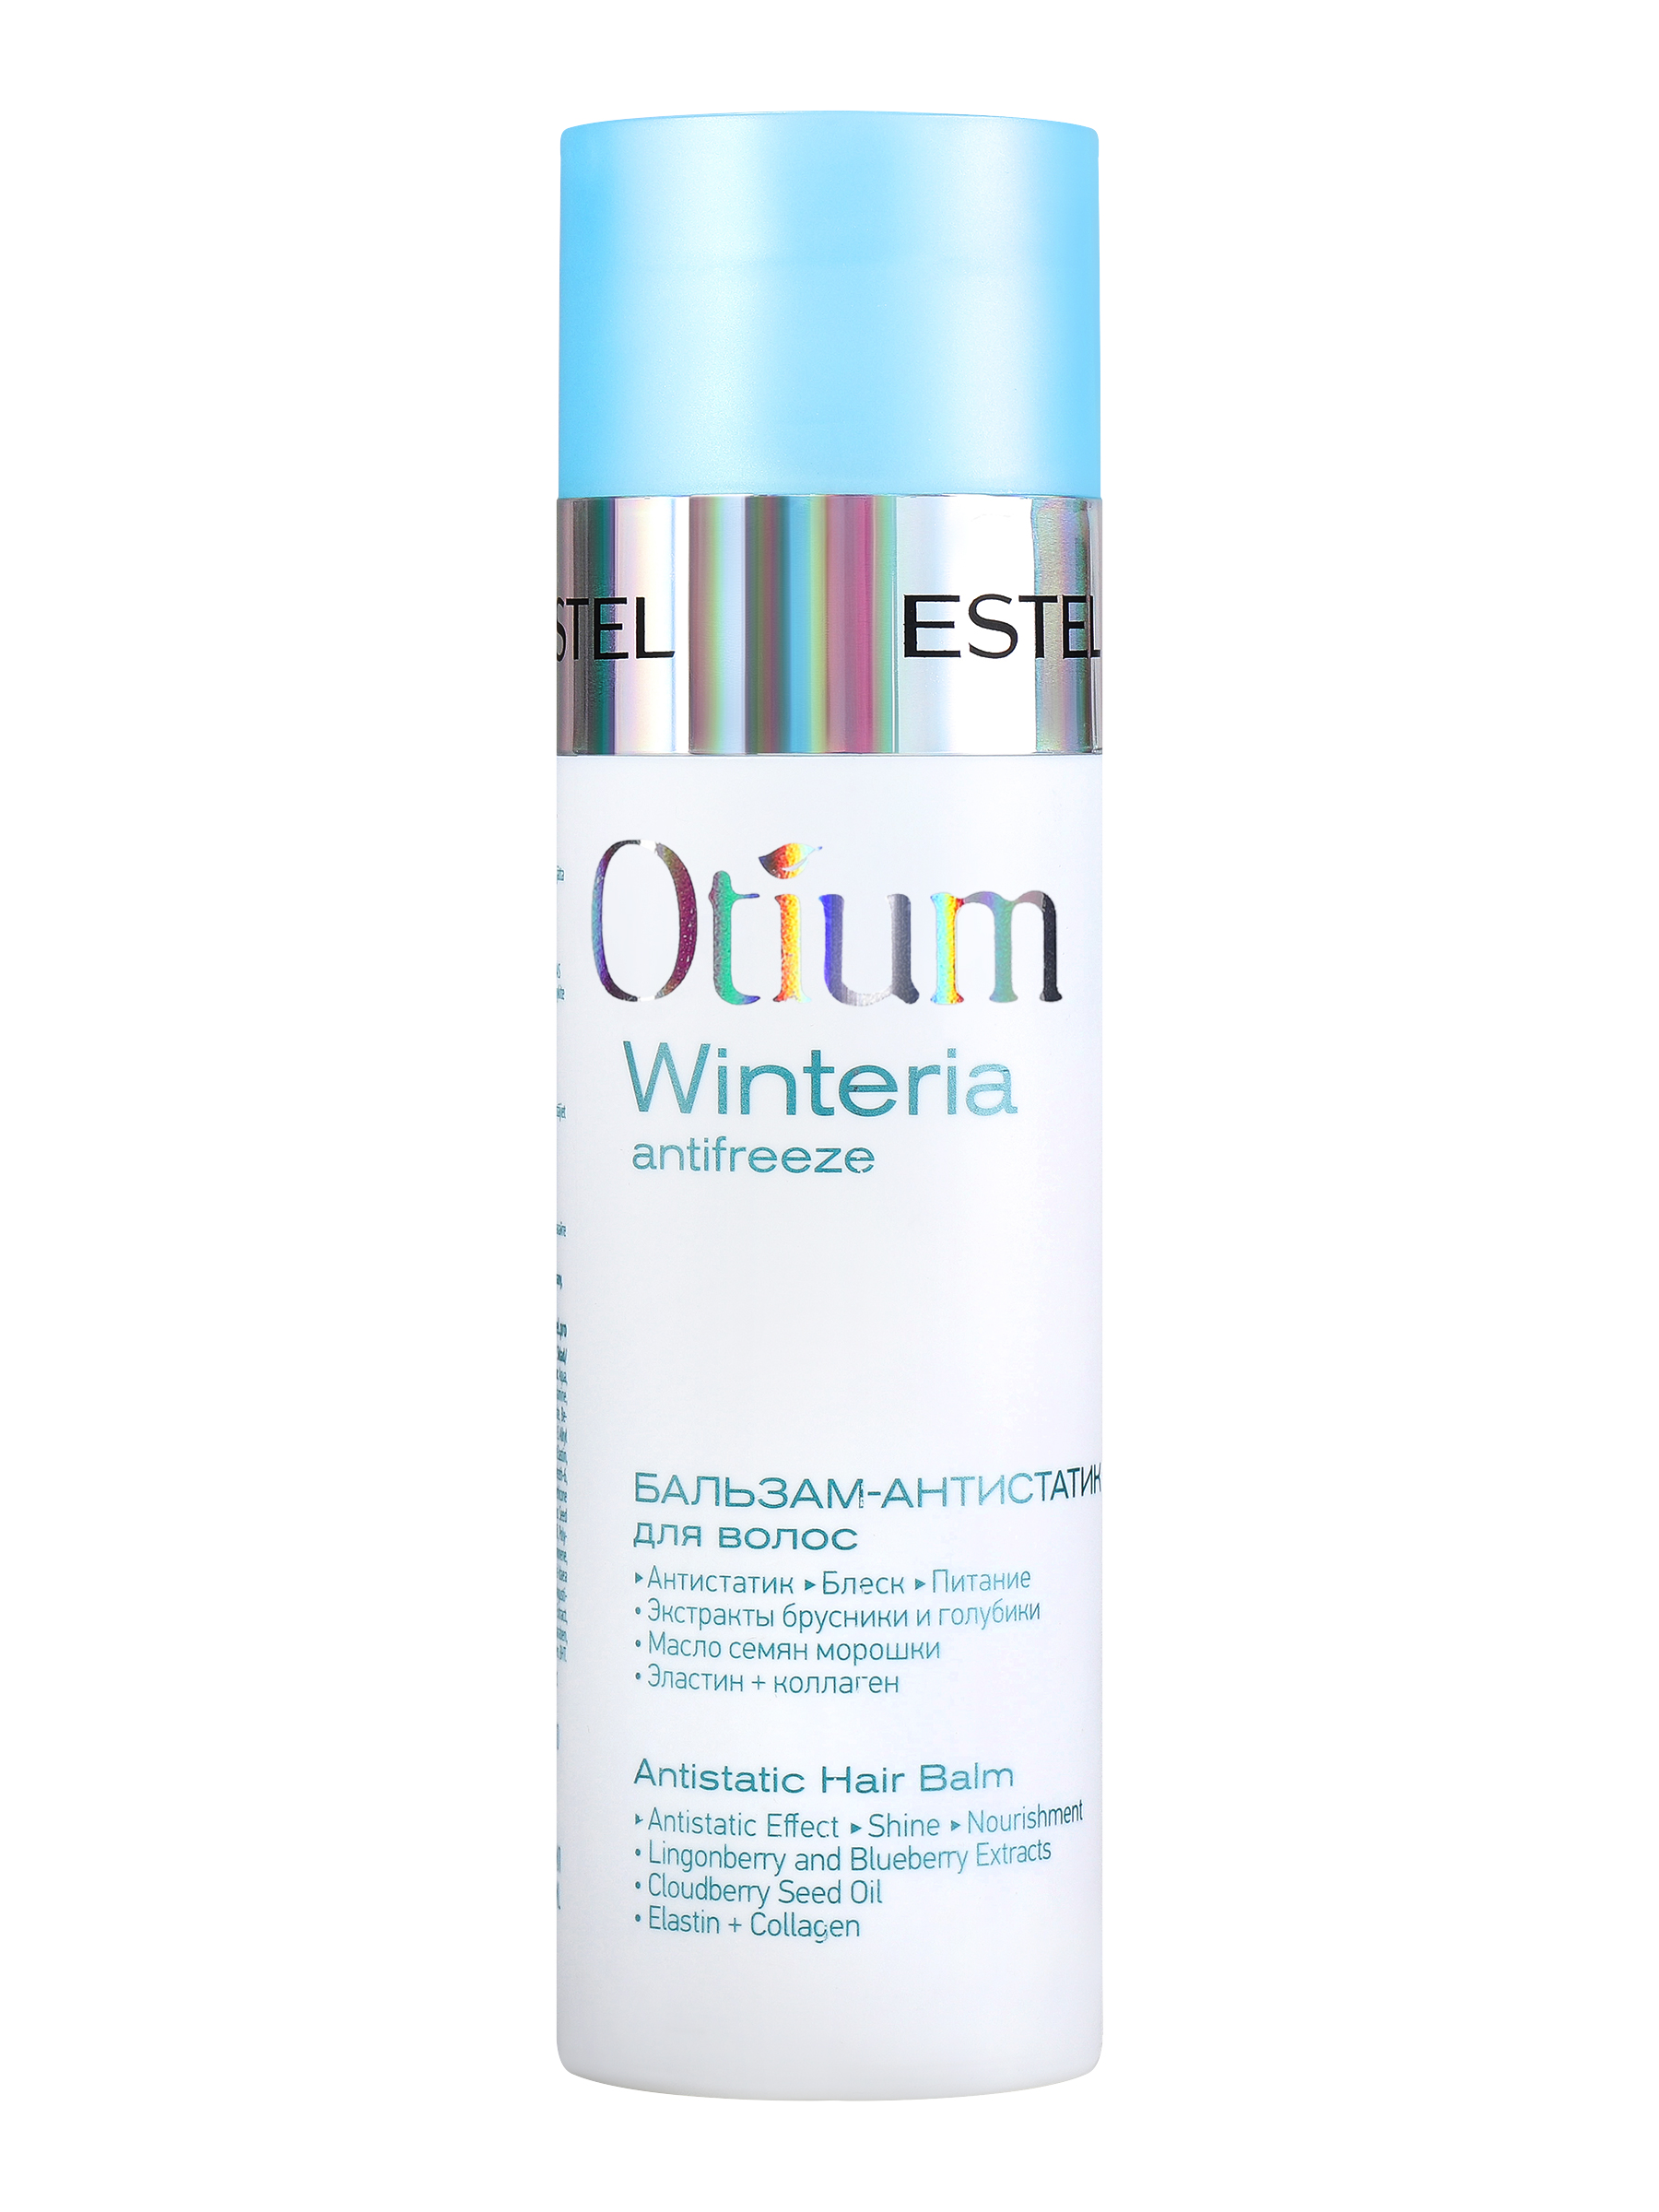 Бальзам-антистатик для волос ESTEL OTIUM WINTERIA 200 мл